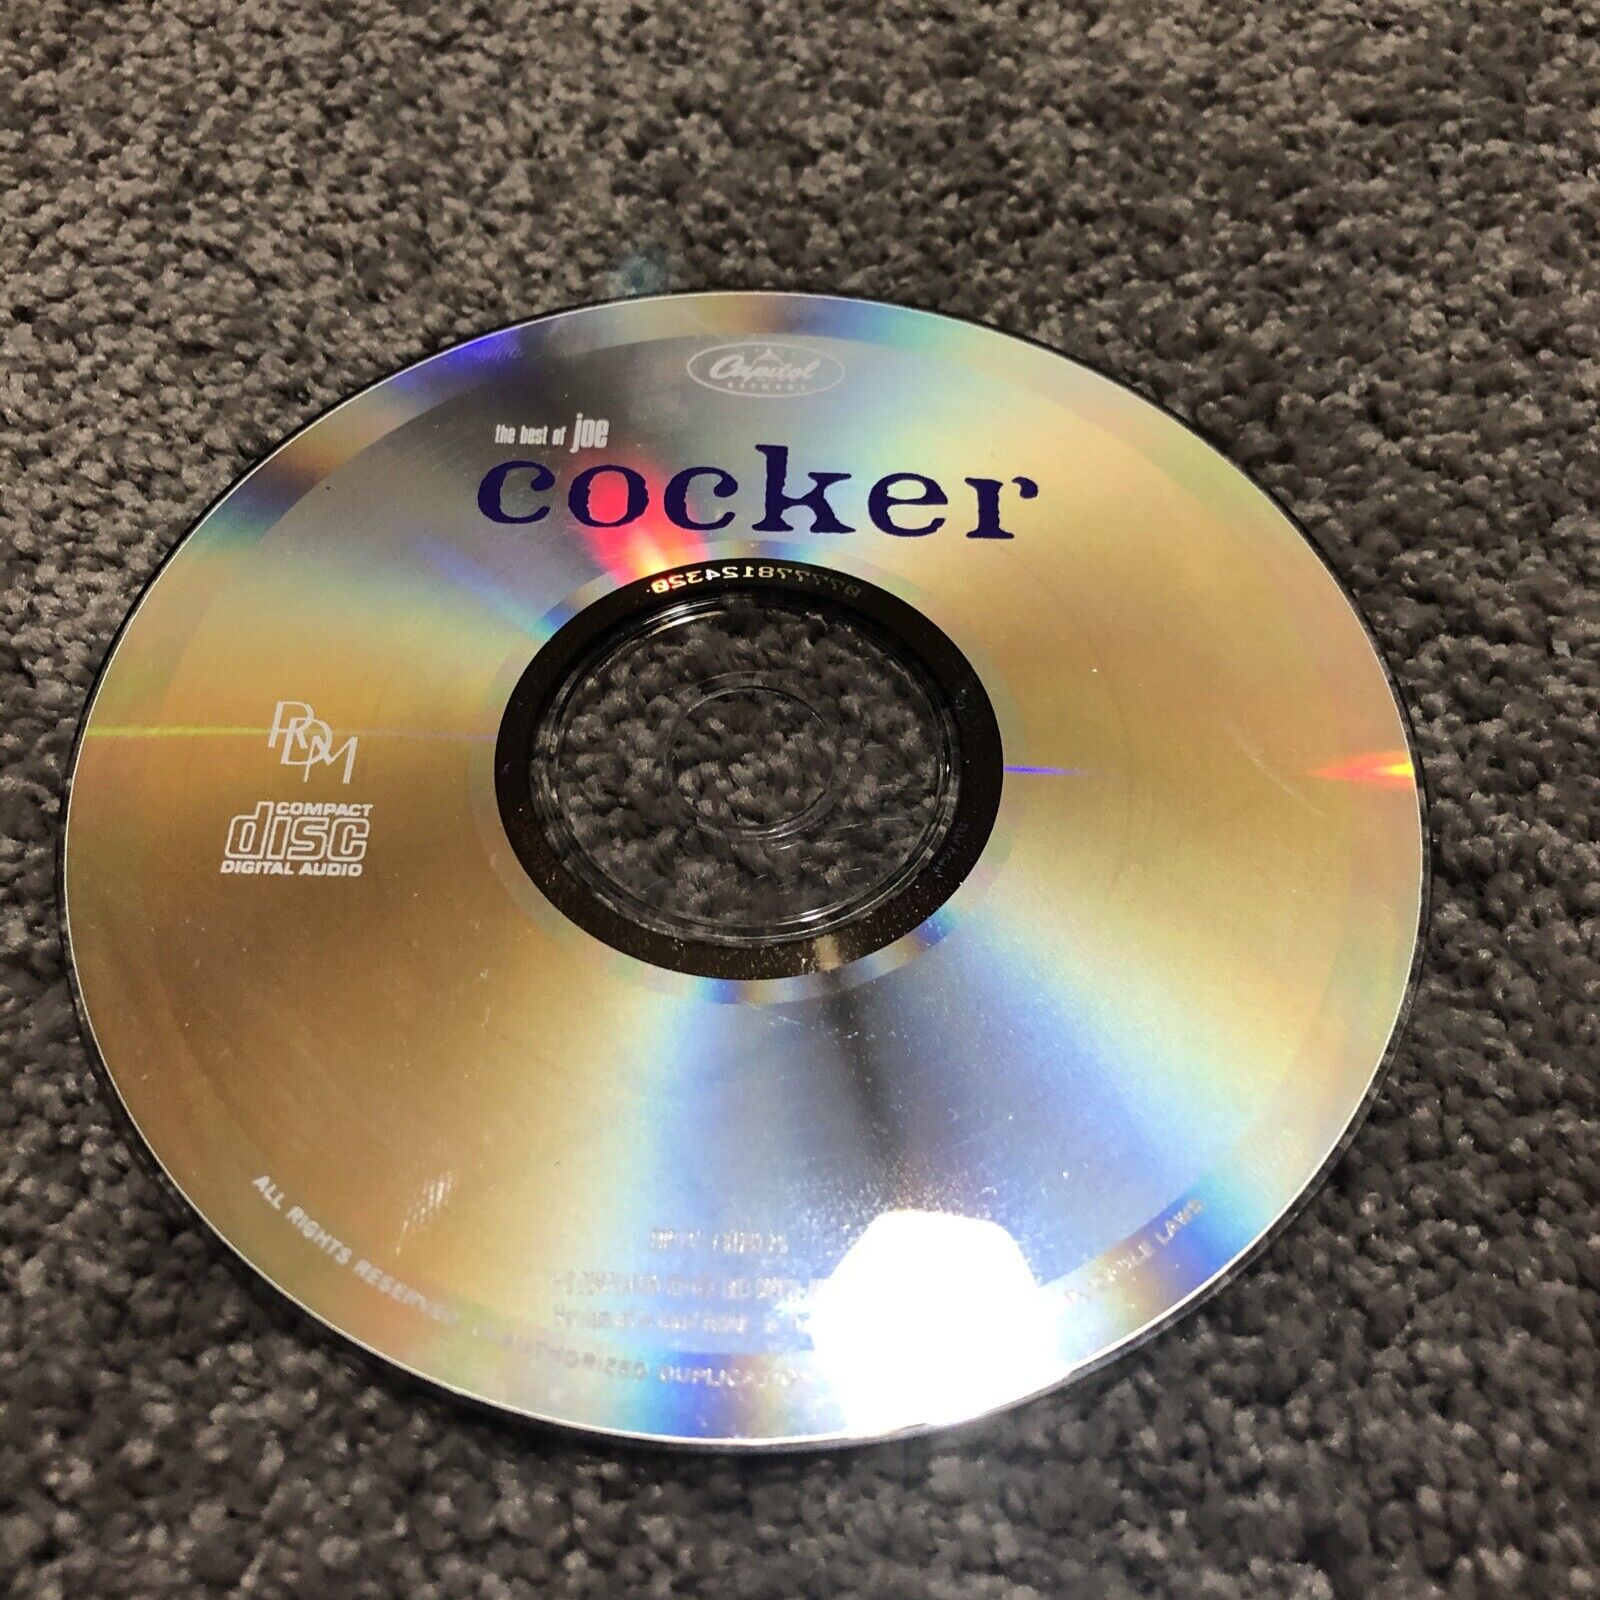 Joe Cocker: The Best of Joe Cocker (CD, 1993 Capitol) Pop, Blues - CD ONLY